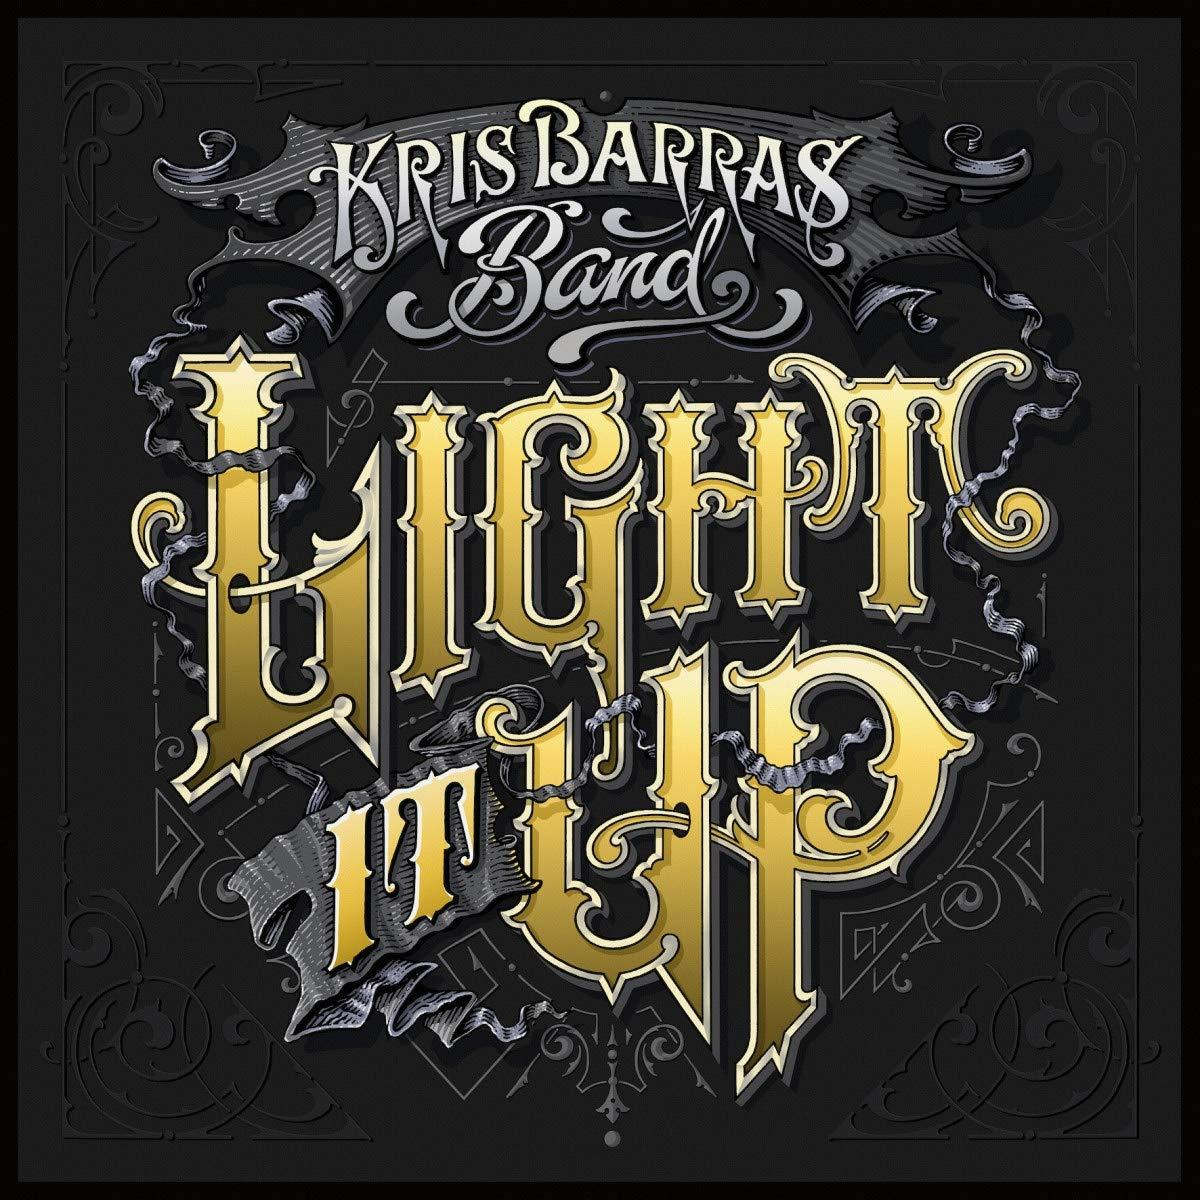 It Up Barras - - Light Band Kris (CD)